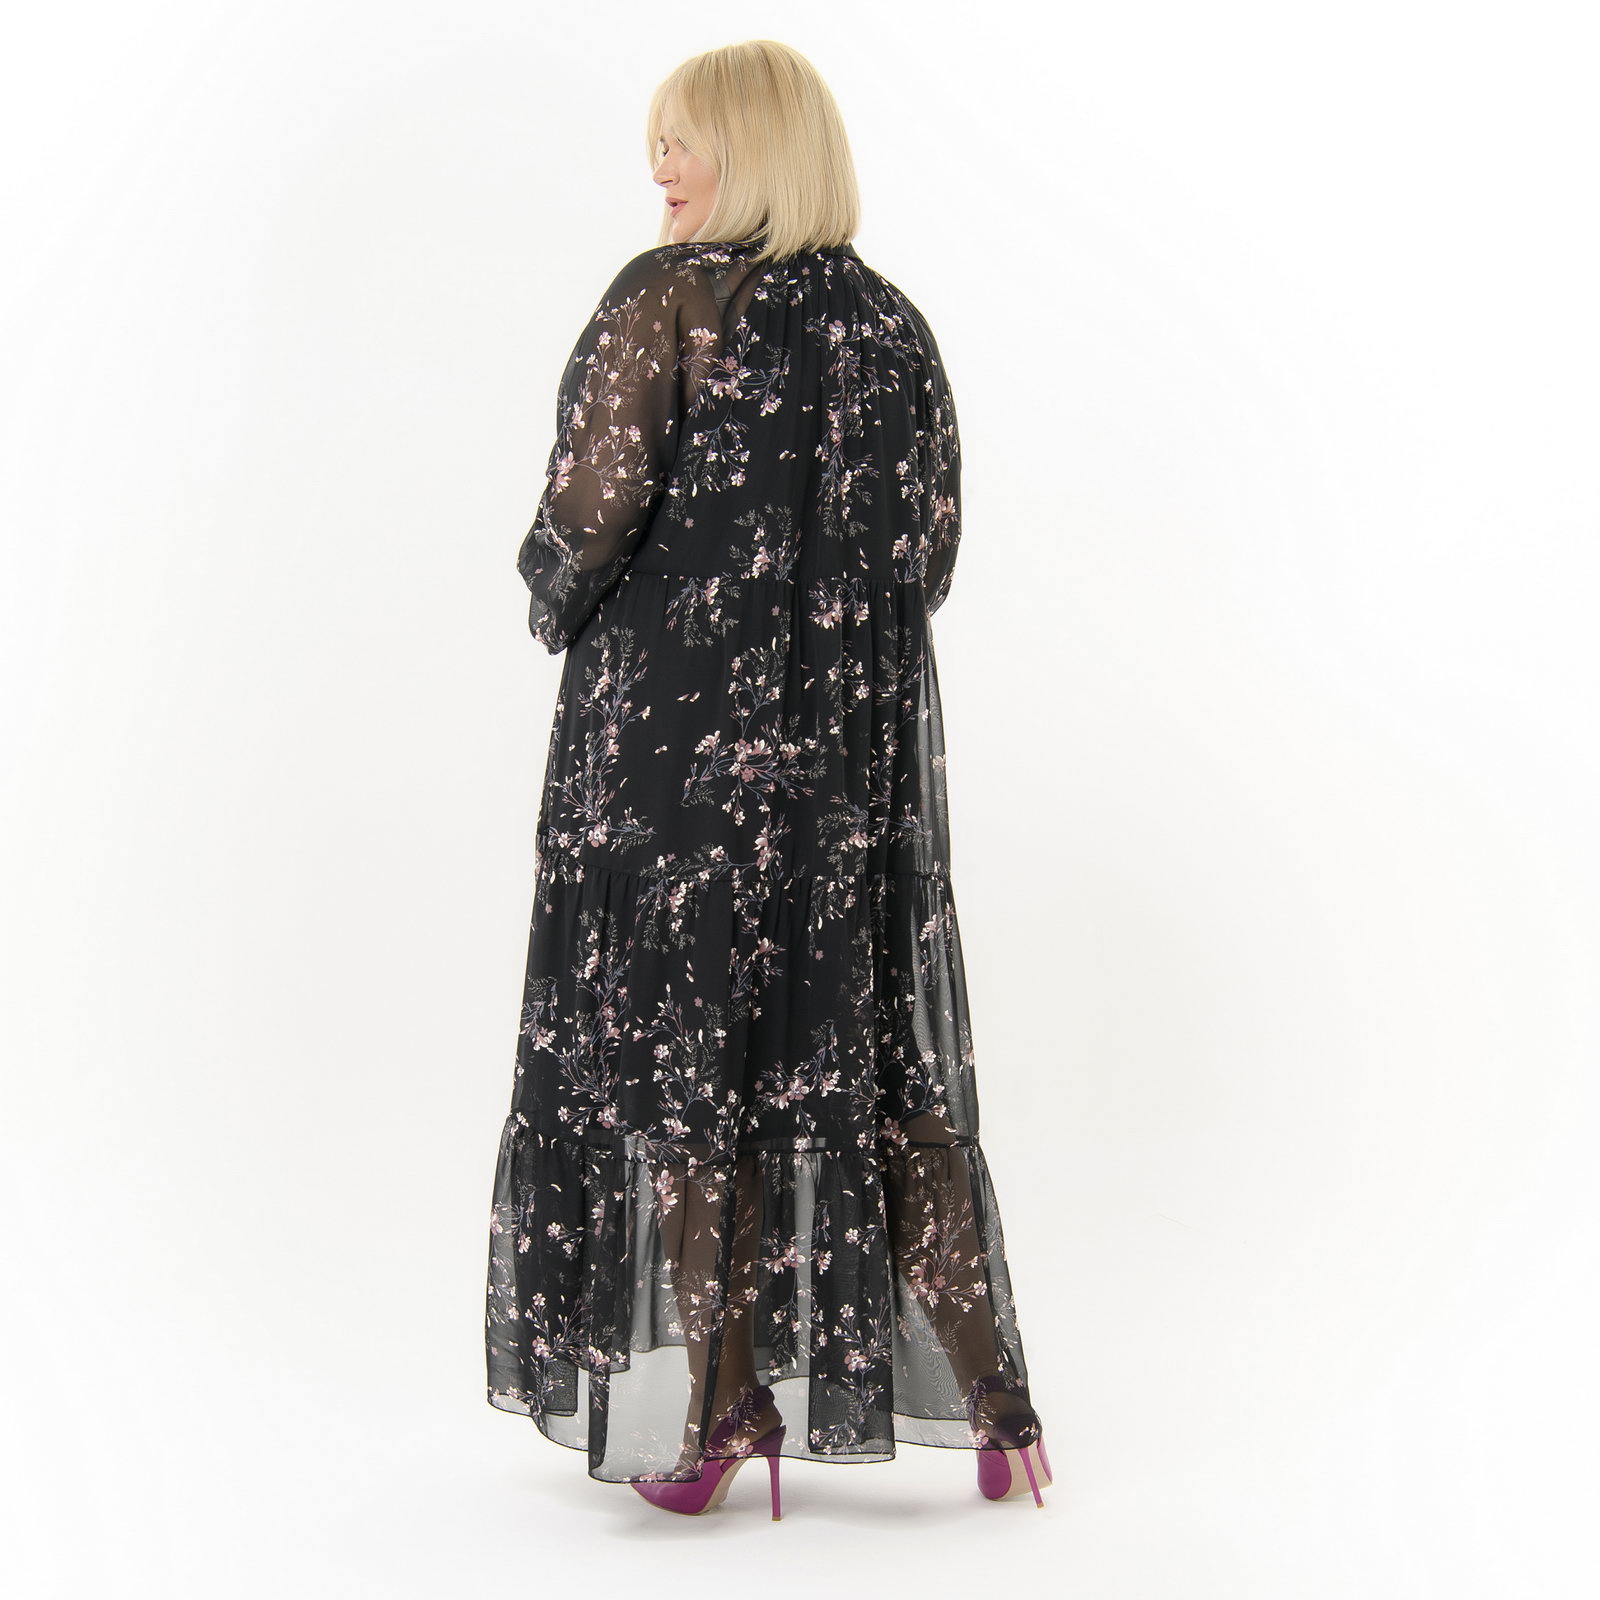 Платье длинное, в стиле 80-х, каскадное, из шифона, принт черный с пудровыми цветами